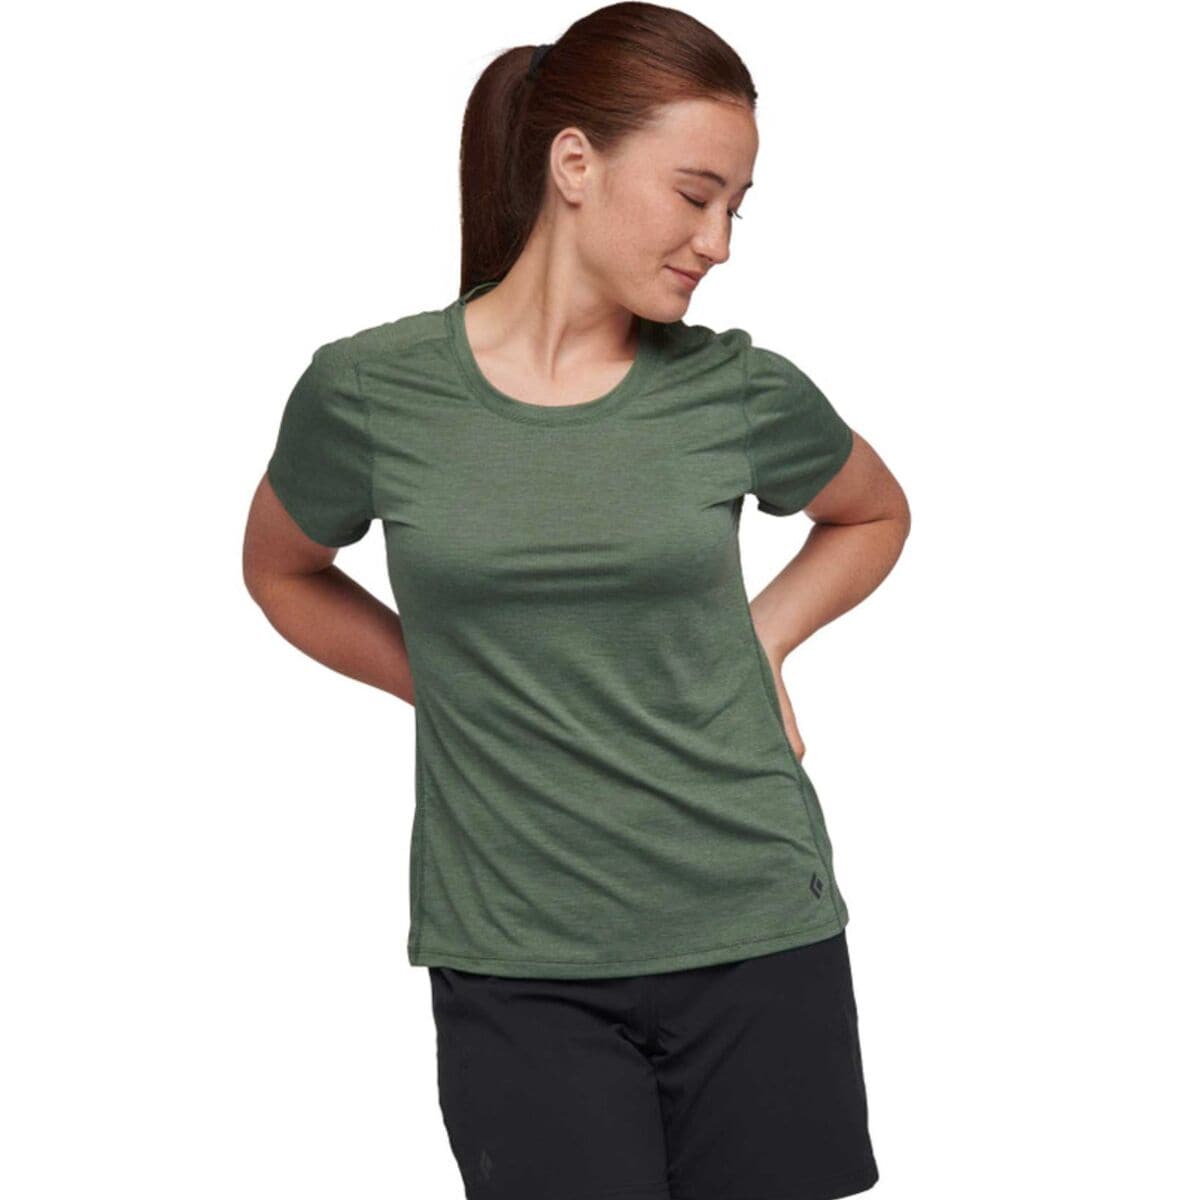 Lightwire Tech Short-Sleeve T-Shirt - Women